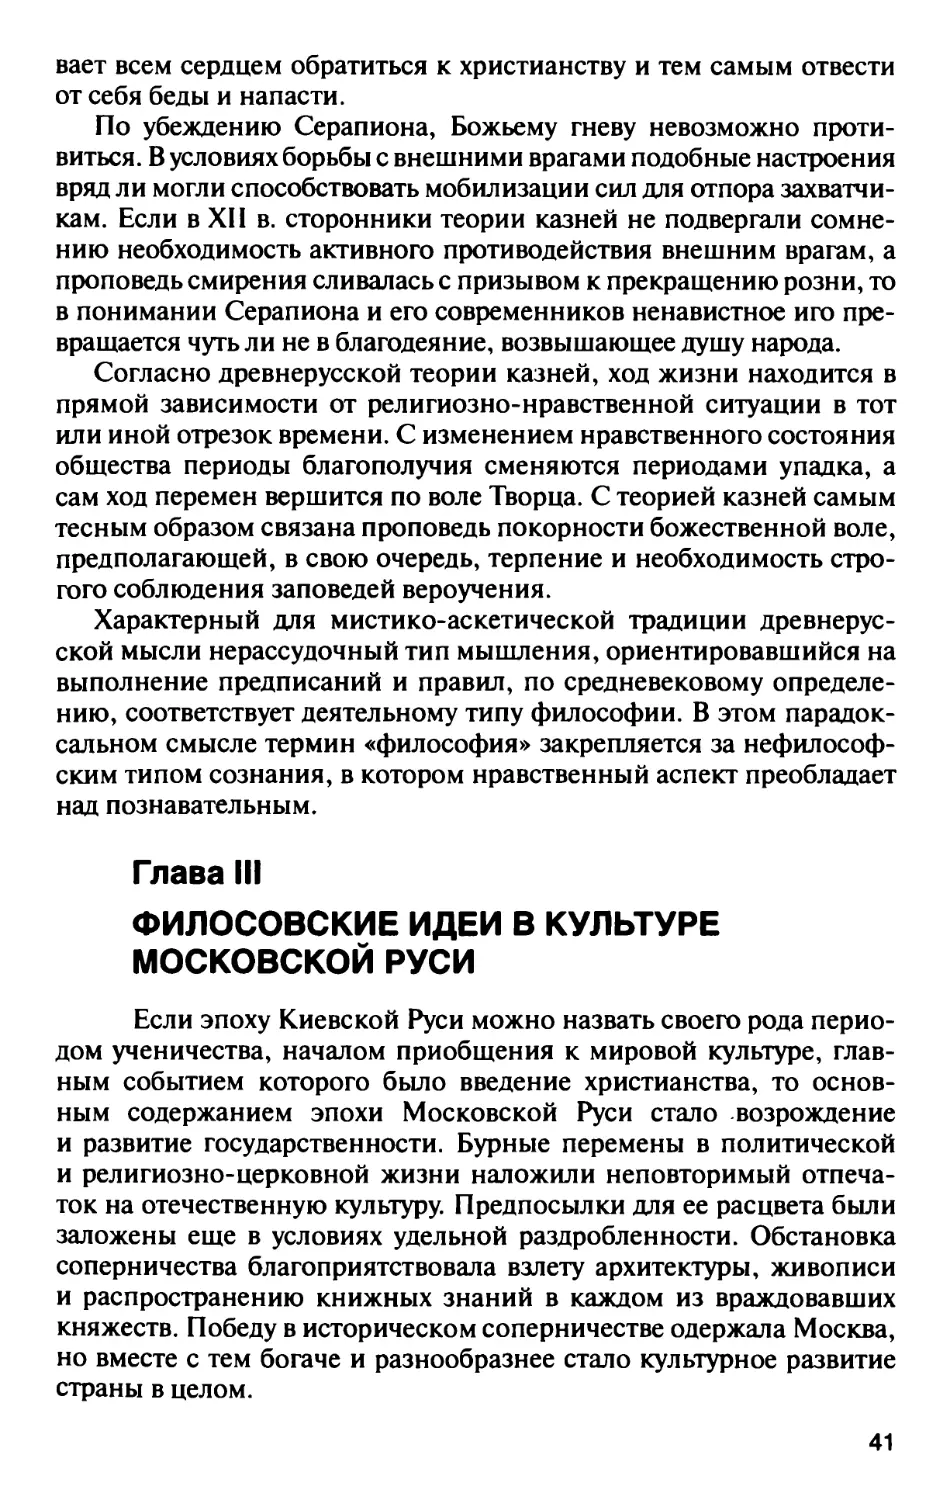 Глава III. Философские идеи в культуре Московской Руси